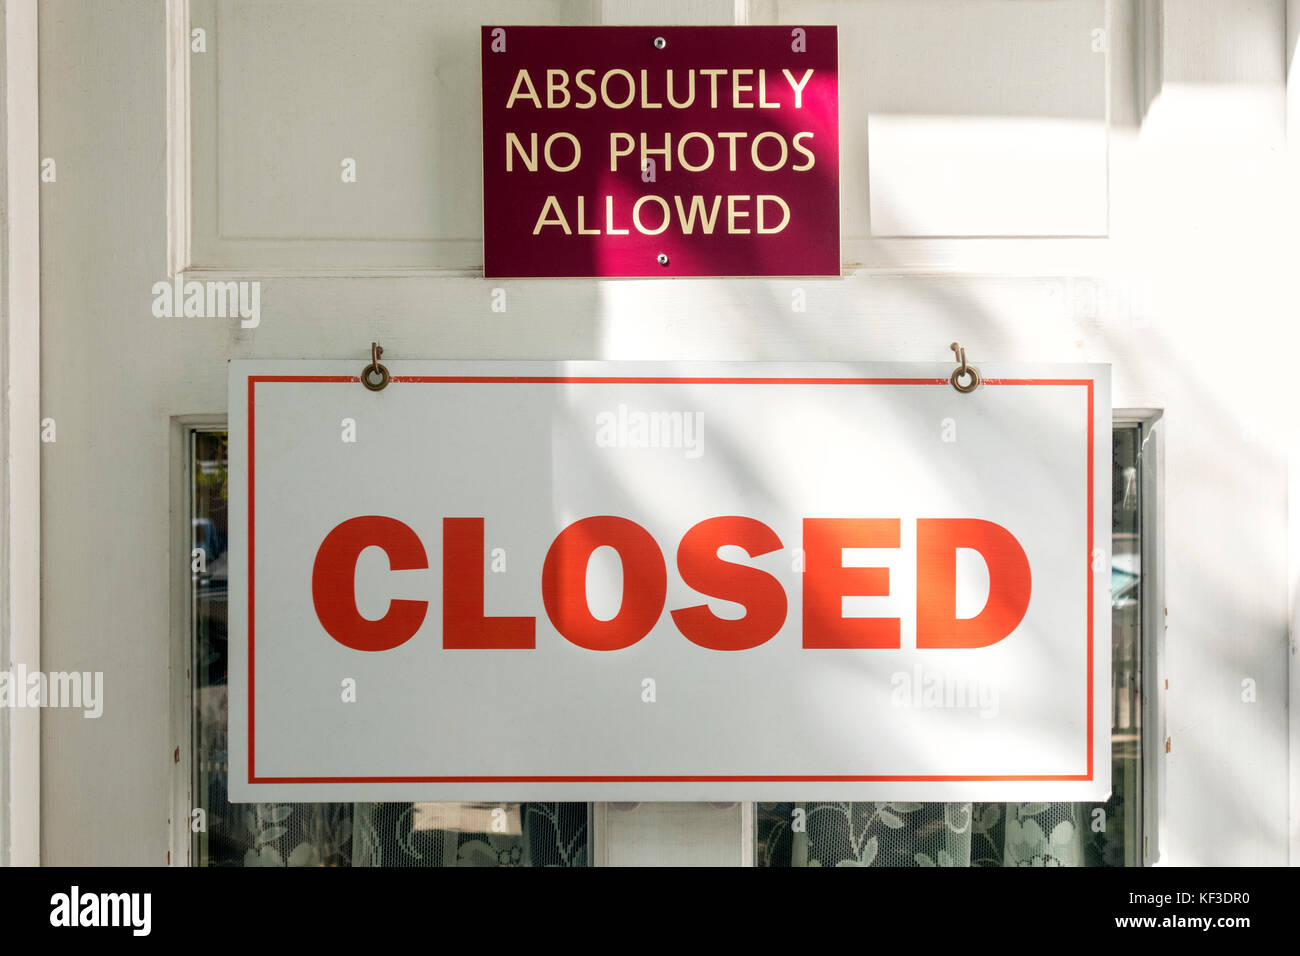 Absolut Zeichen keine Fotos auf Geschlossen museum Tür erlaubt mit Vorzeichen geschlossen. Stockfoto